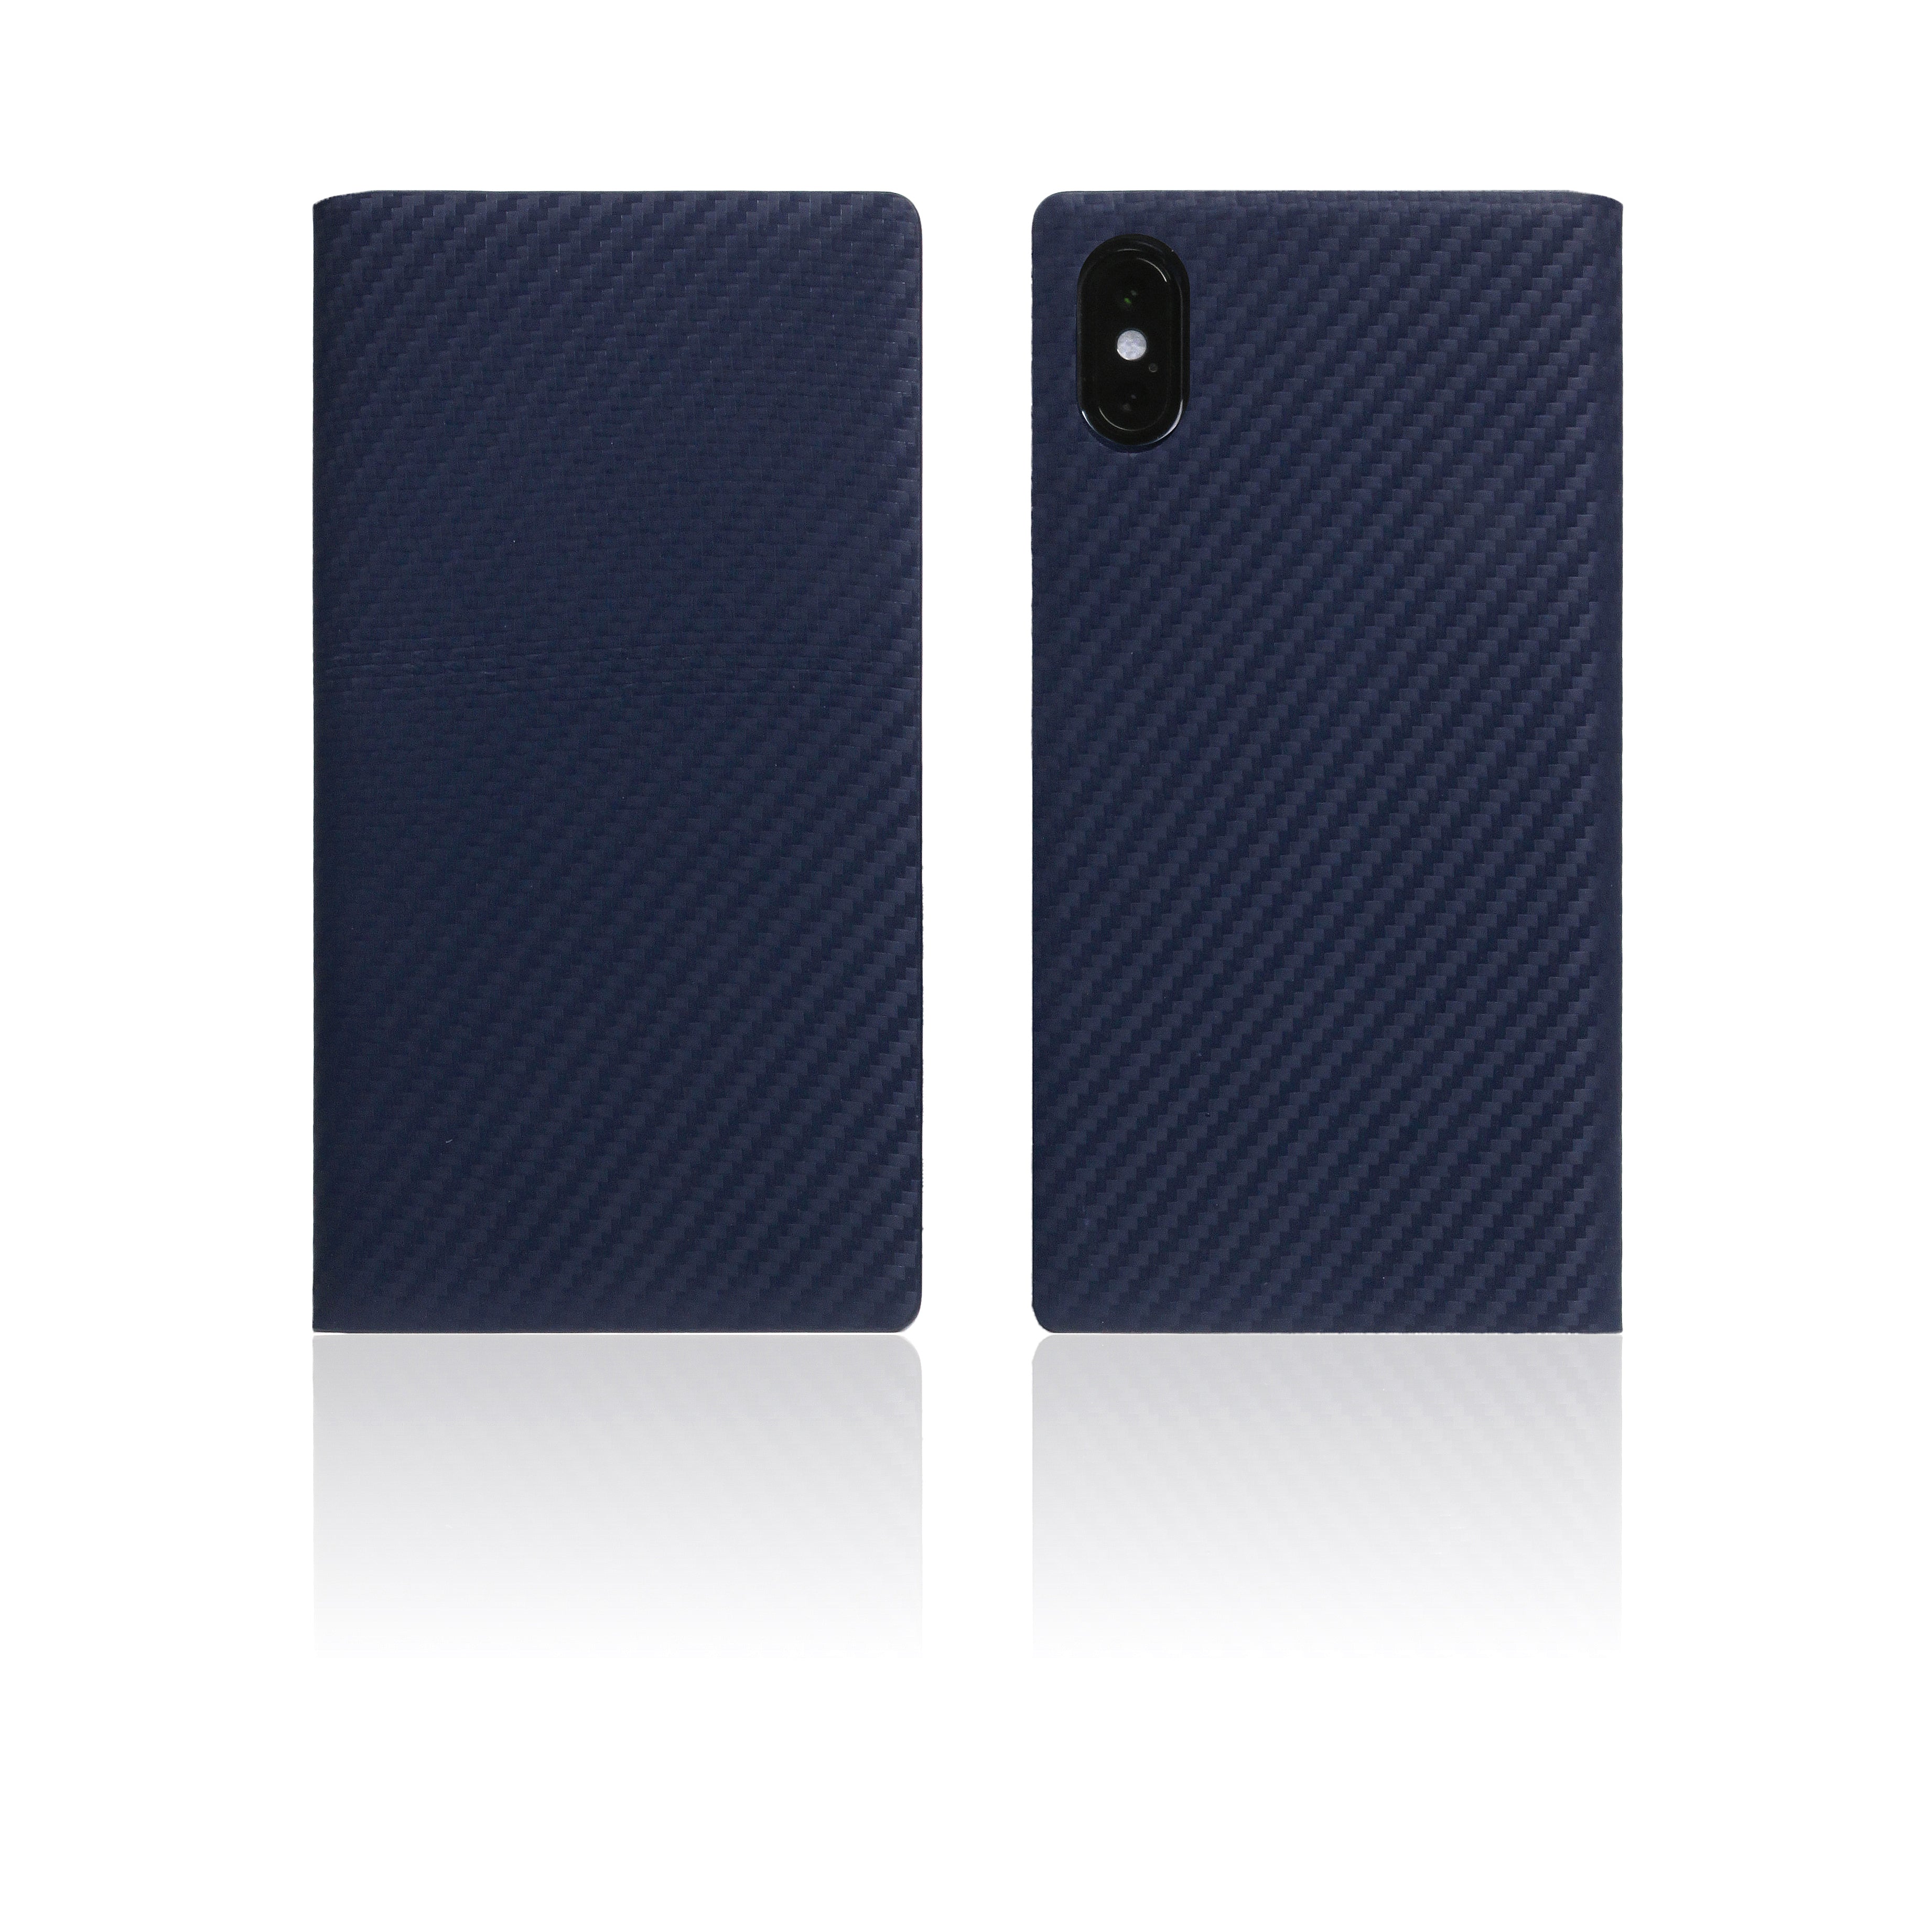 Exclusive iPhone Xs Carbon Fiber Design Cases